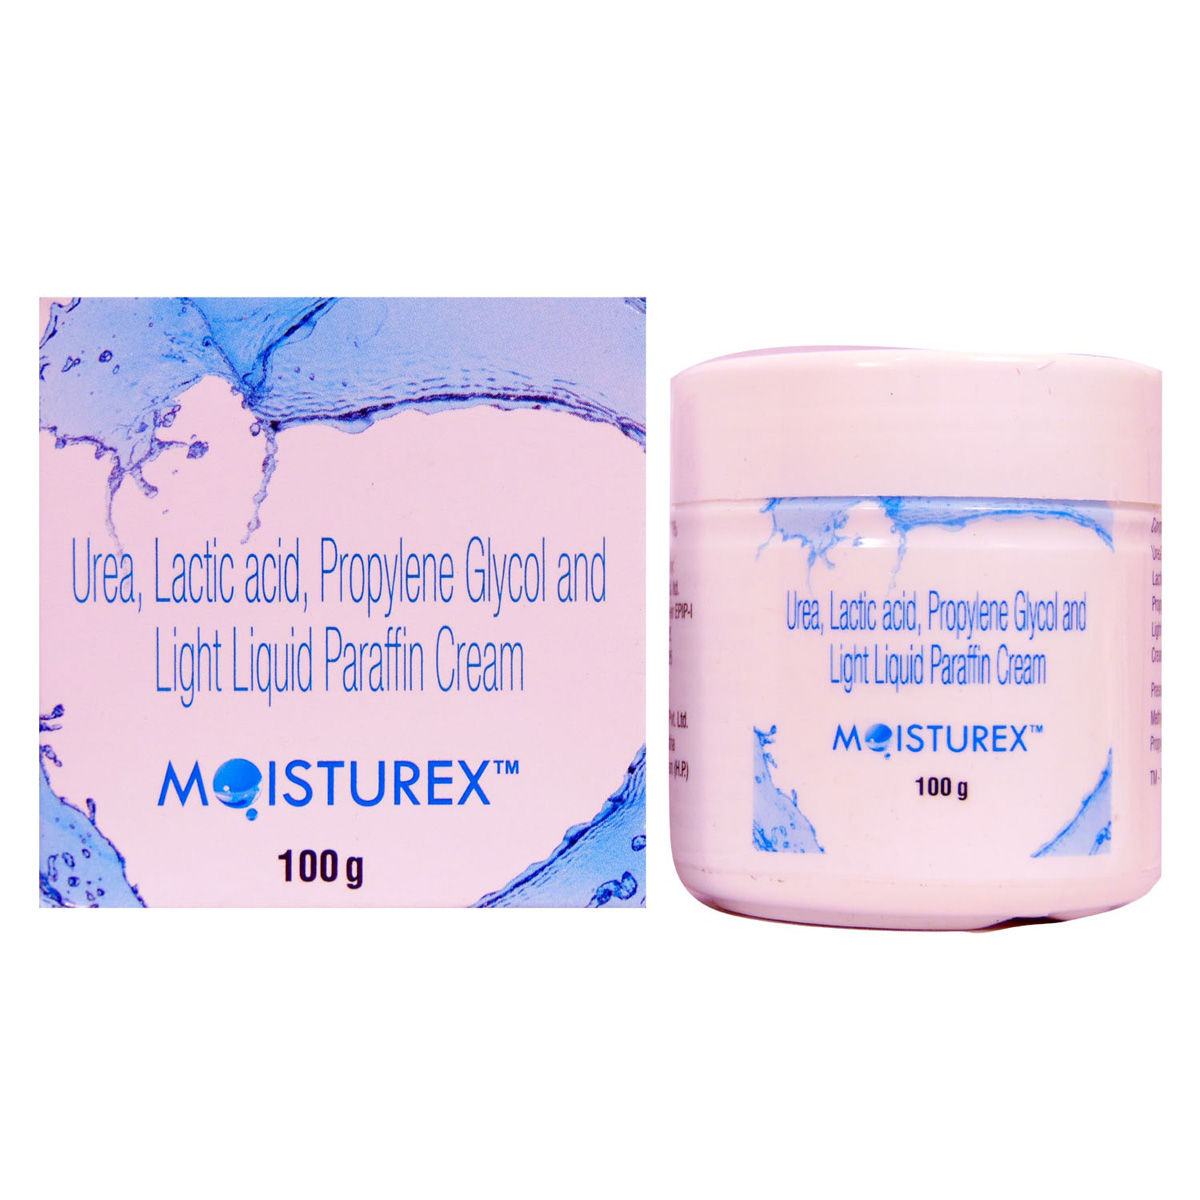 Buy Moisturex Cream 100 gm Online